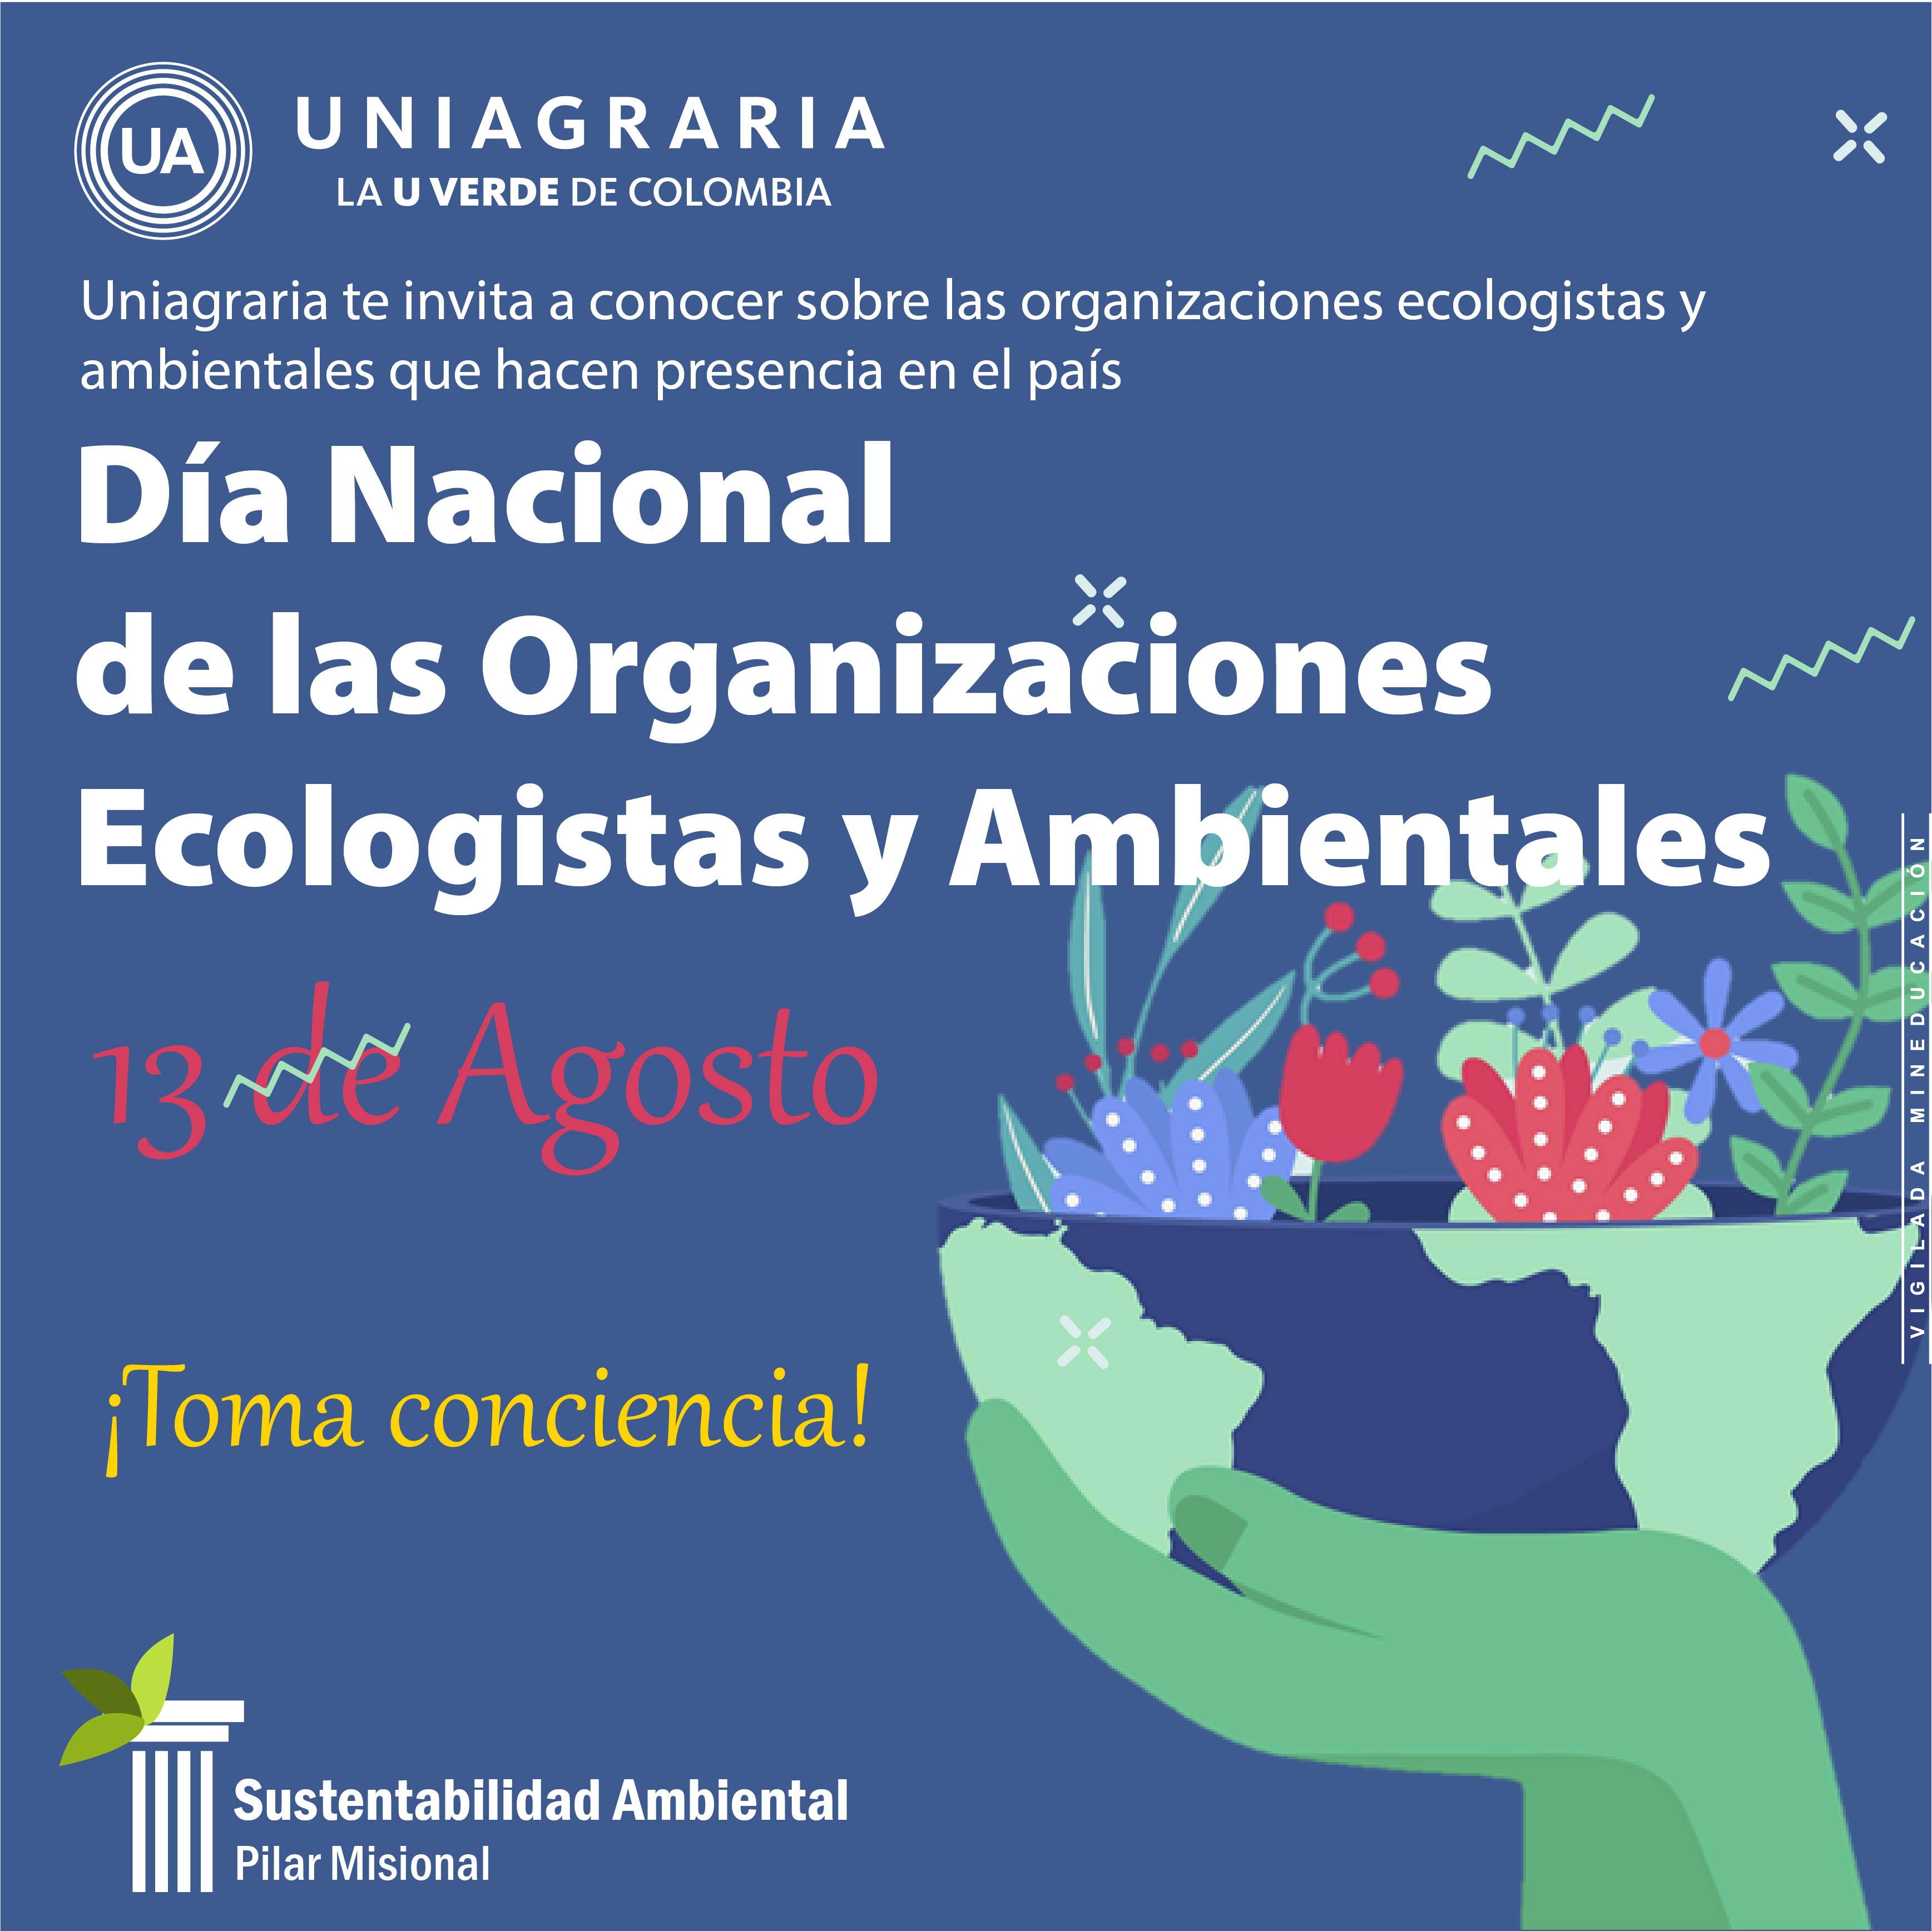 Día Nacional de las Organizaciones Ecologistas y Ambientales